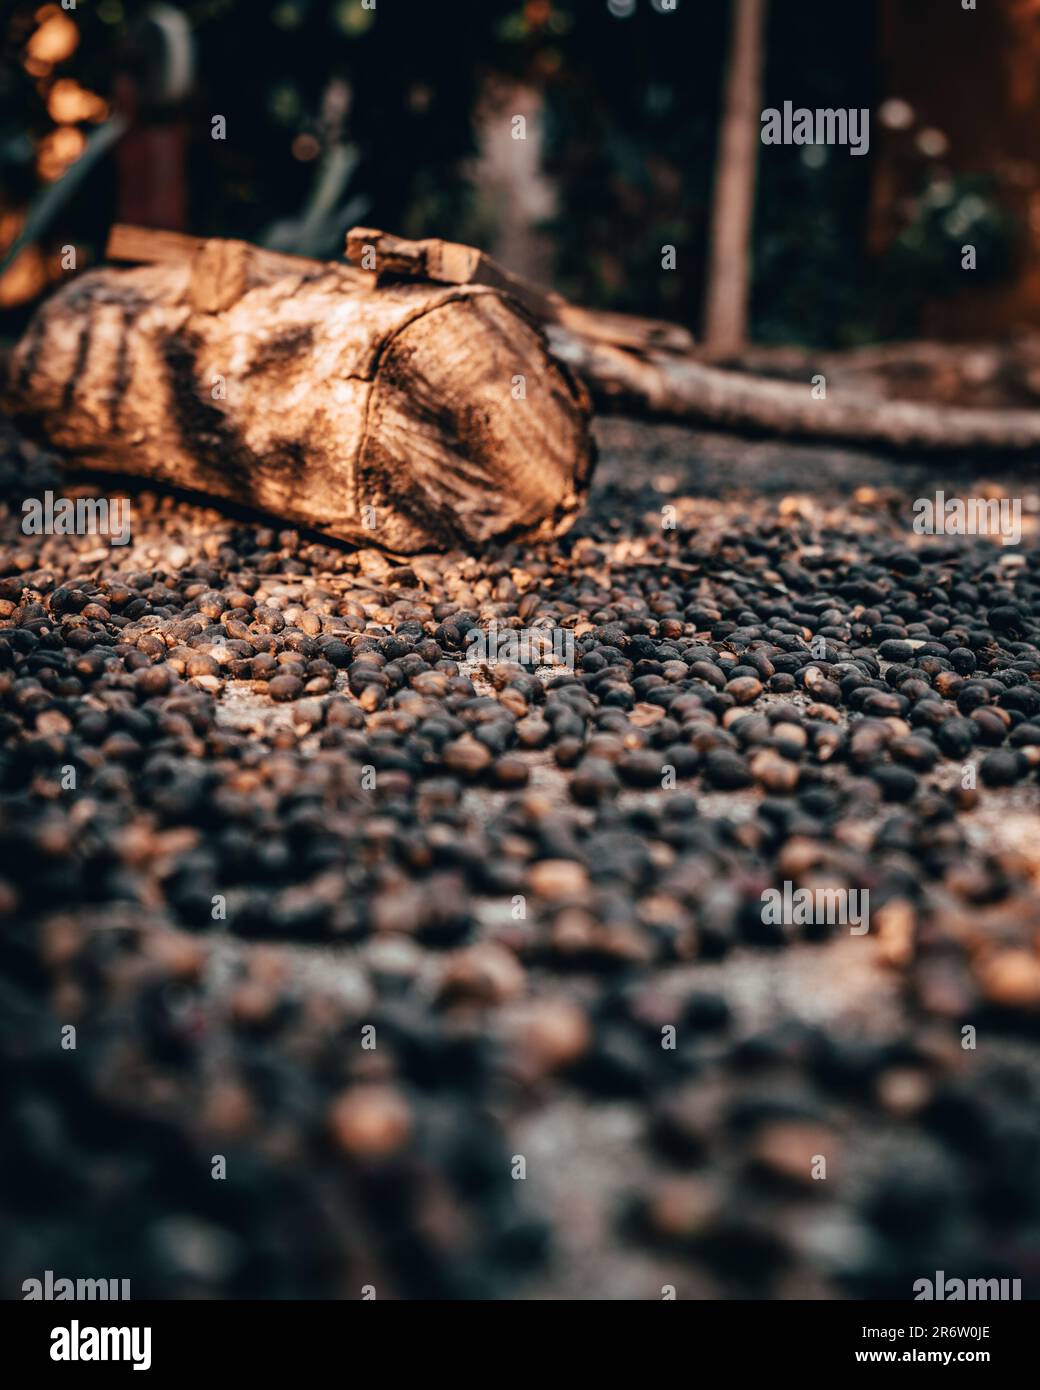 Kaffeesamen lagen auf dem Boden und wurden getrocknet. Die Wärme der Natur und die Luft lassen ihre Aromen sanft ausstrahlen und bewahren ihre Essenz für die Stockfoto